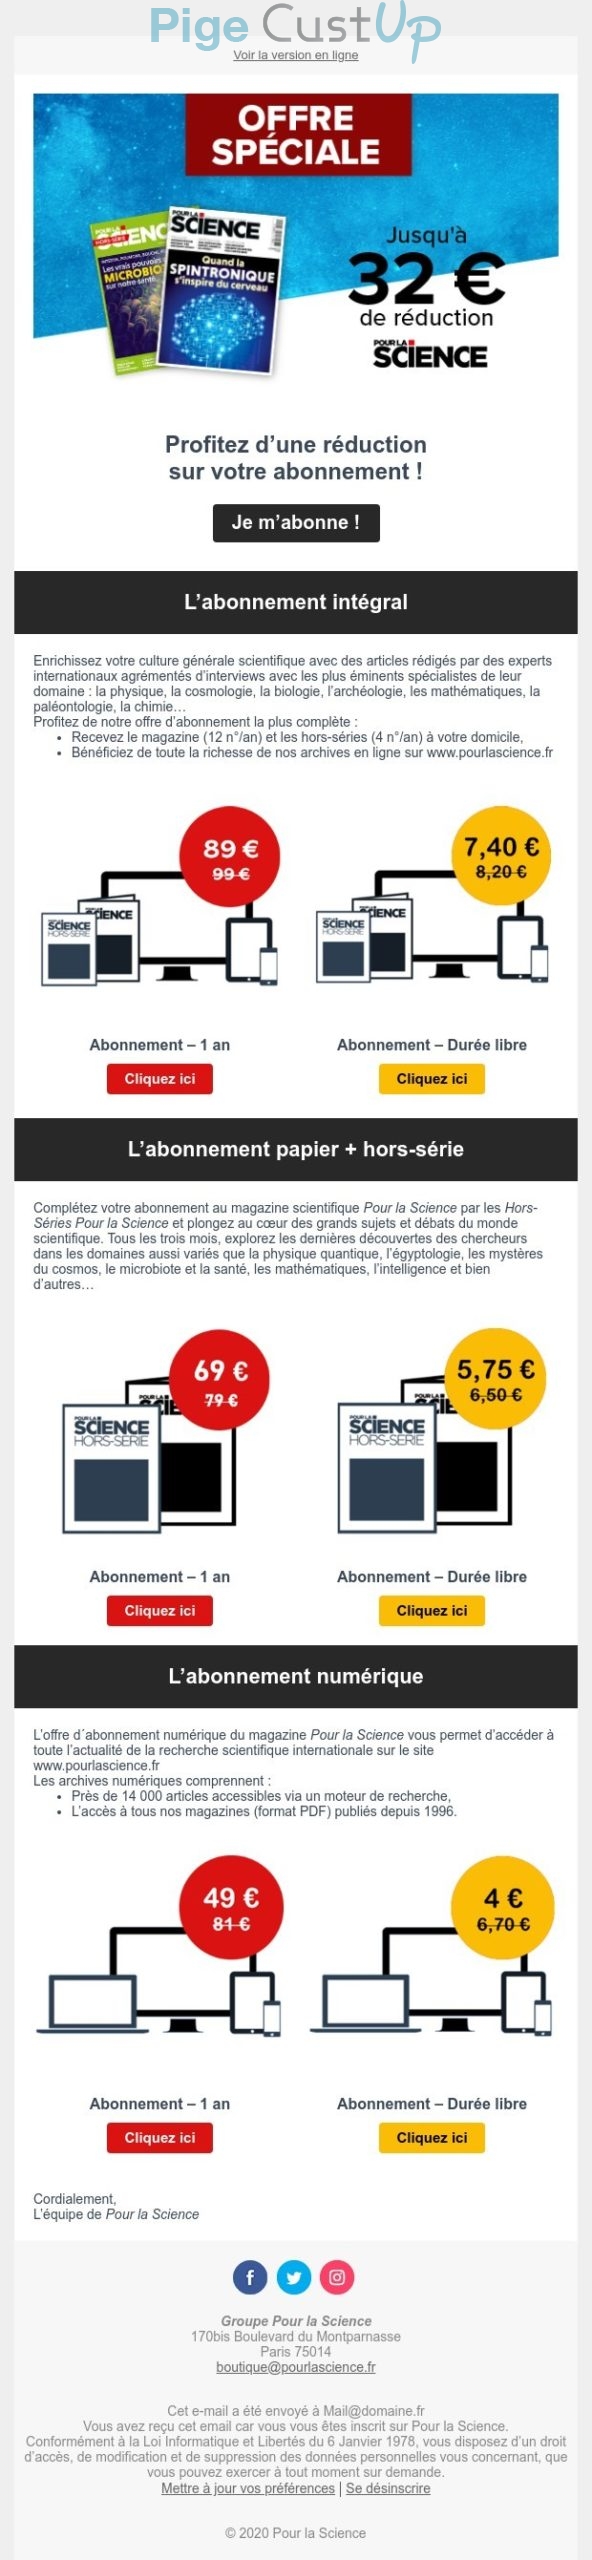 Exemple de Type de media  e-mailing - Pour la Science - Marketing Acquisition - Acquisition abonnements